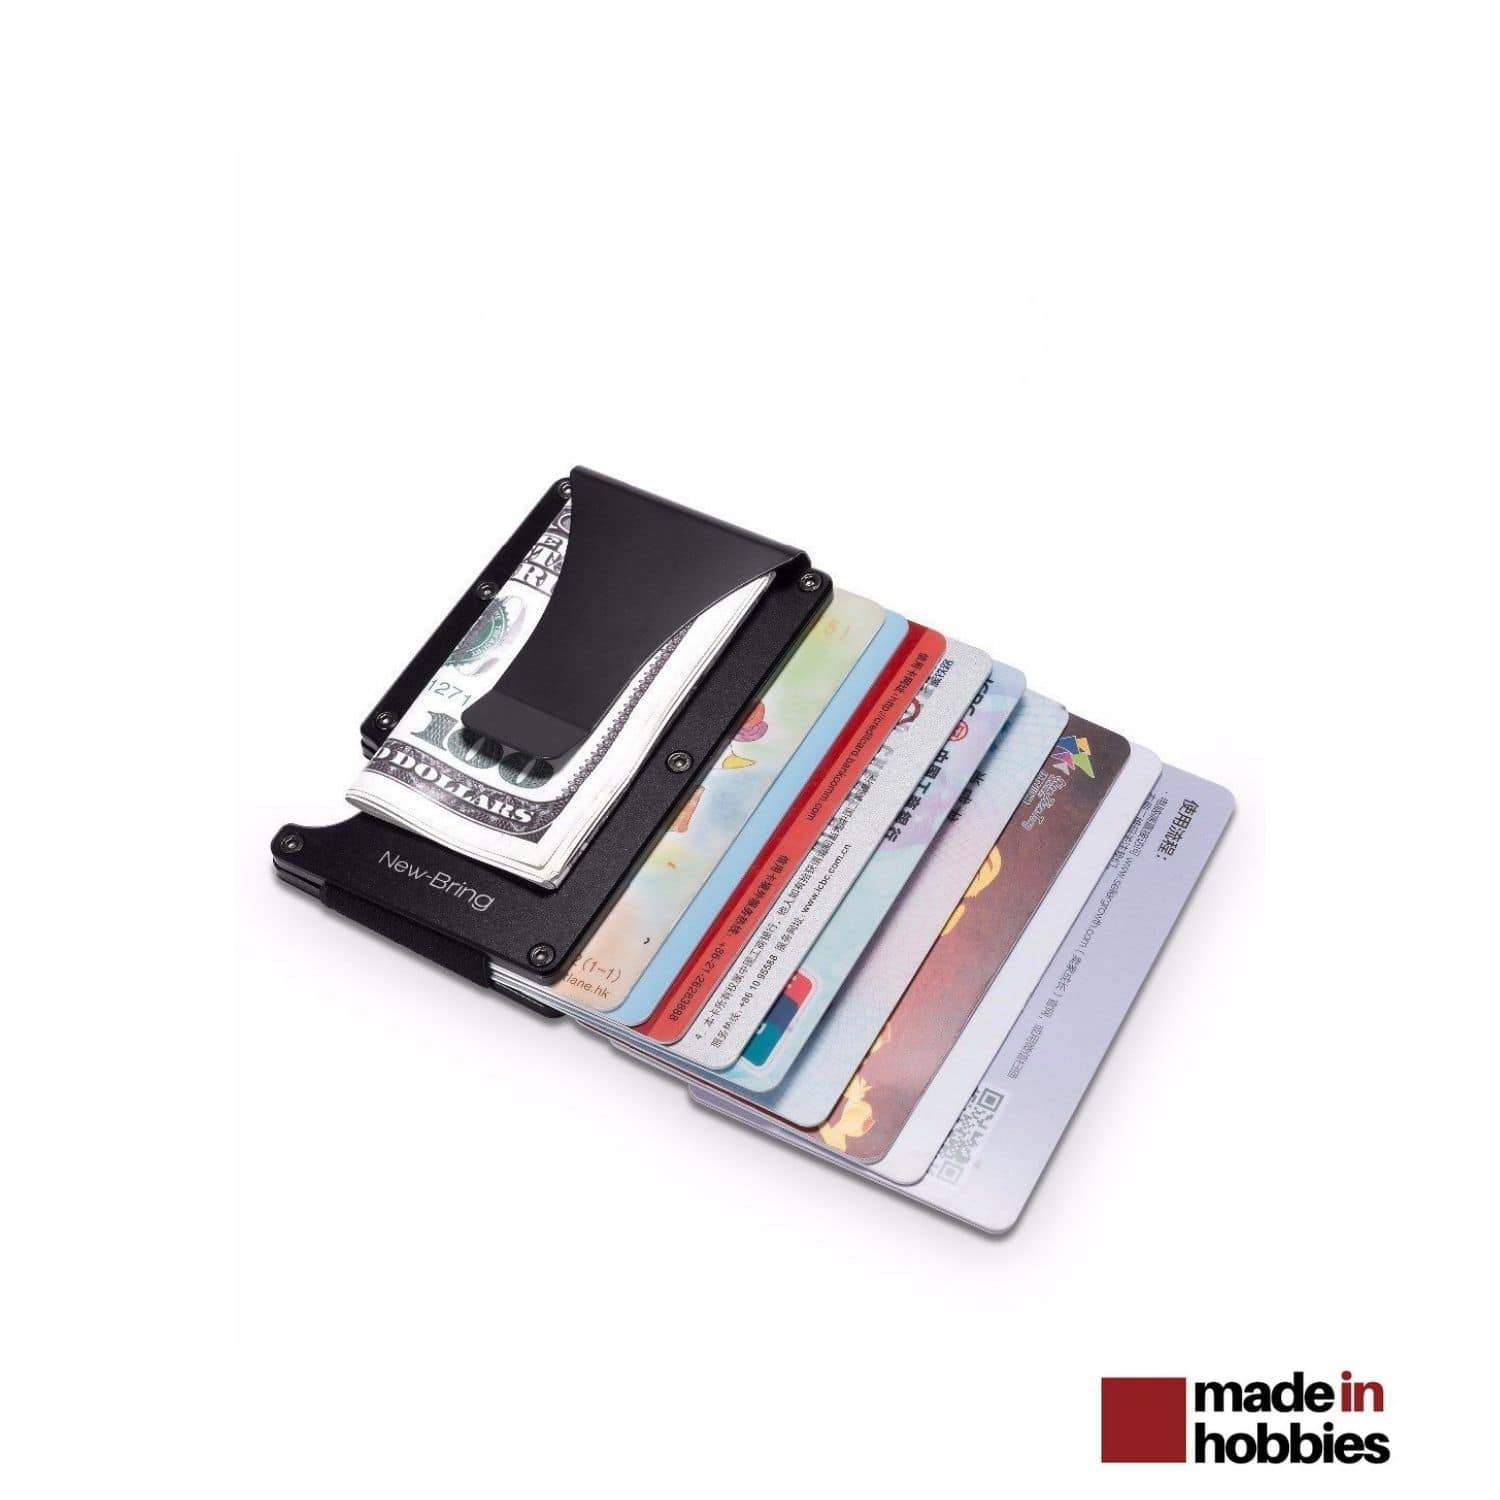 Porte carte de credit coins droits - ref. 355 - Dim. 9,6 x 13,2 cm -  Etablissements Bancaires Point Change - Secteur bancaire - Porte carte,  étui, pochette